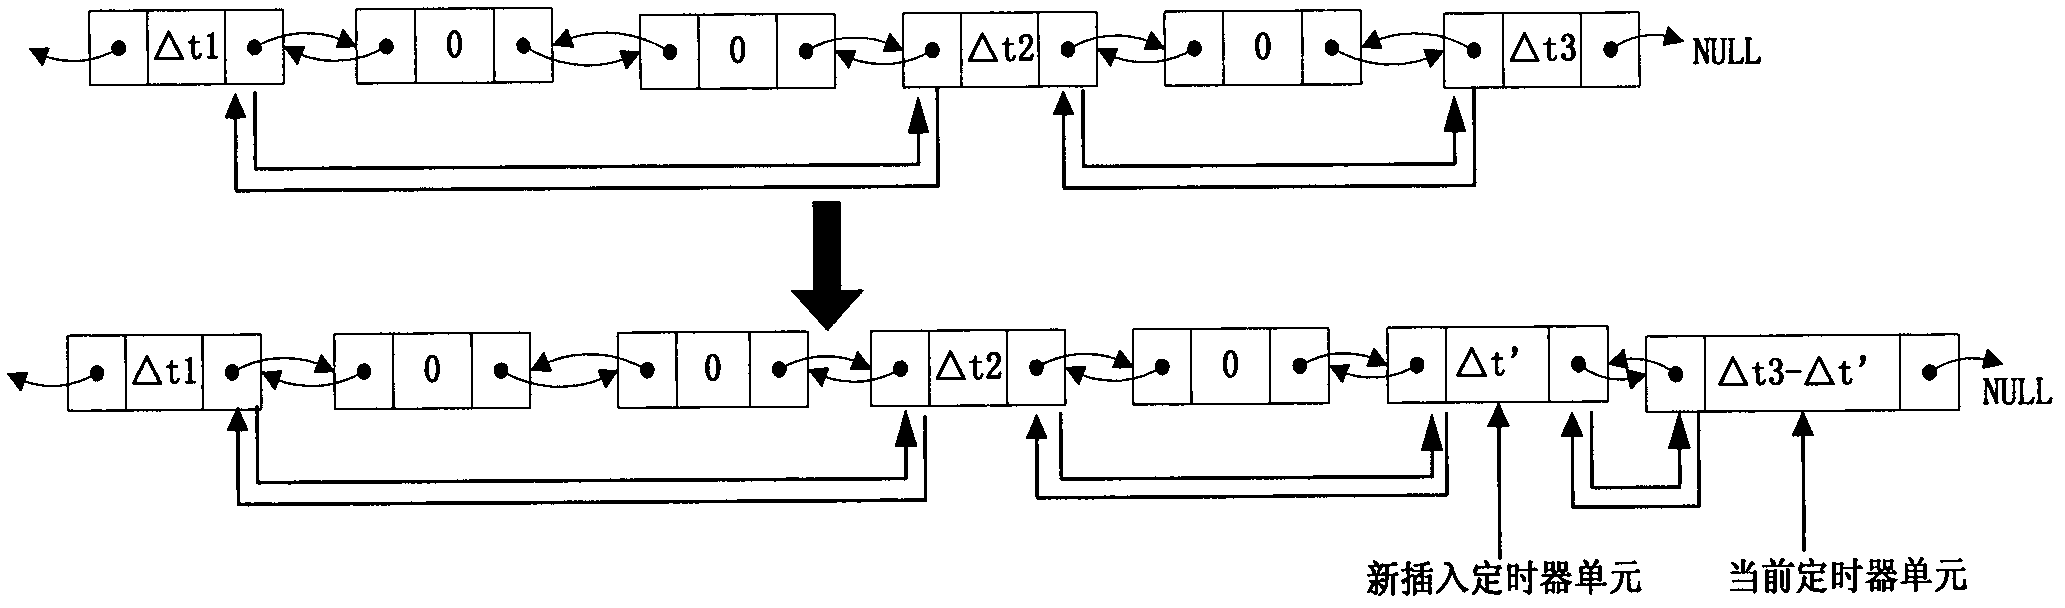 Timer setting method under multithreading environment